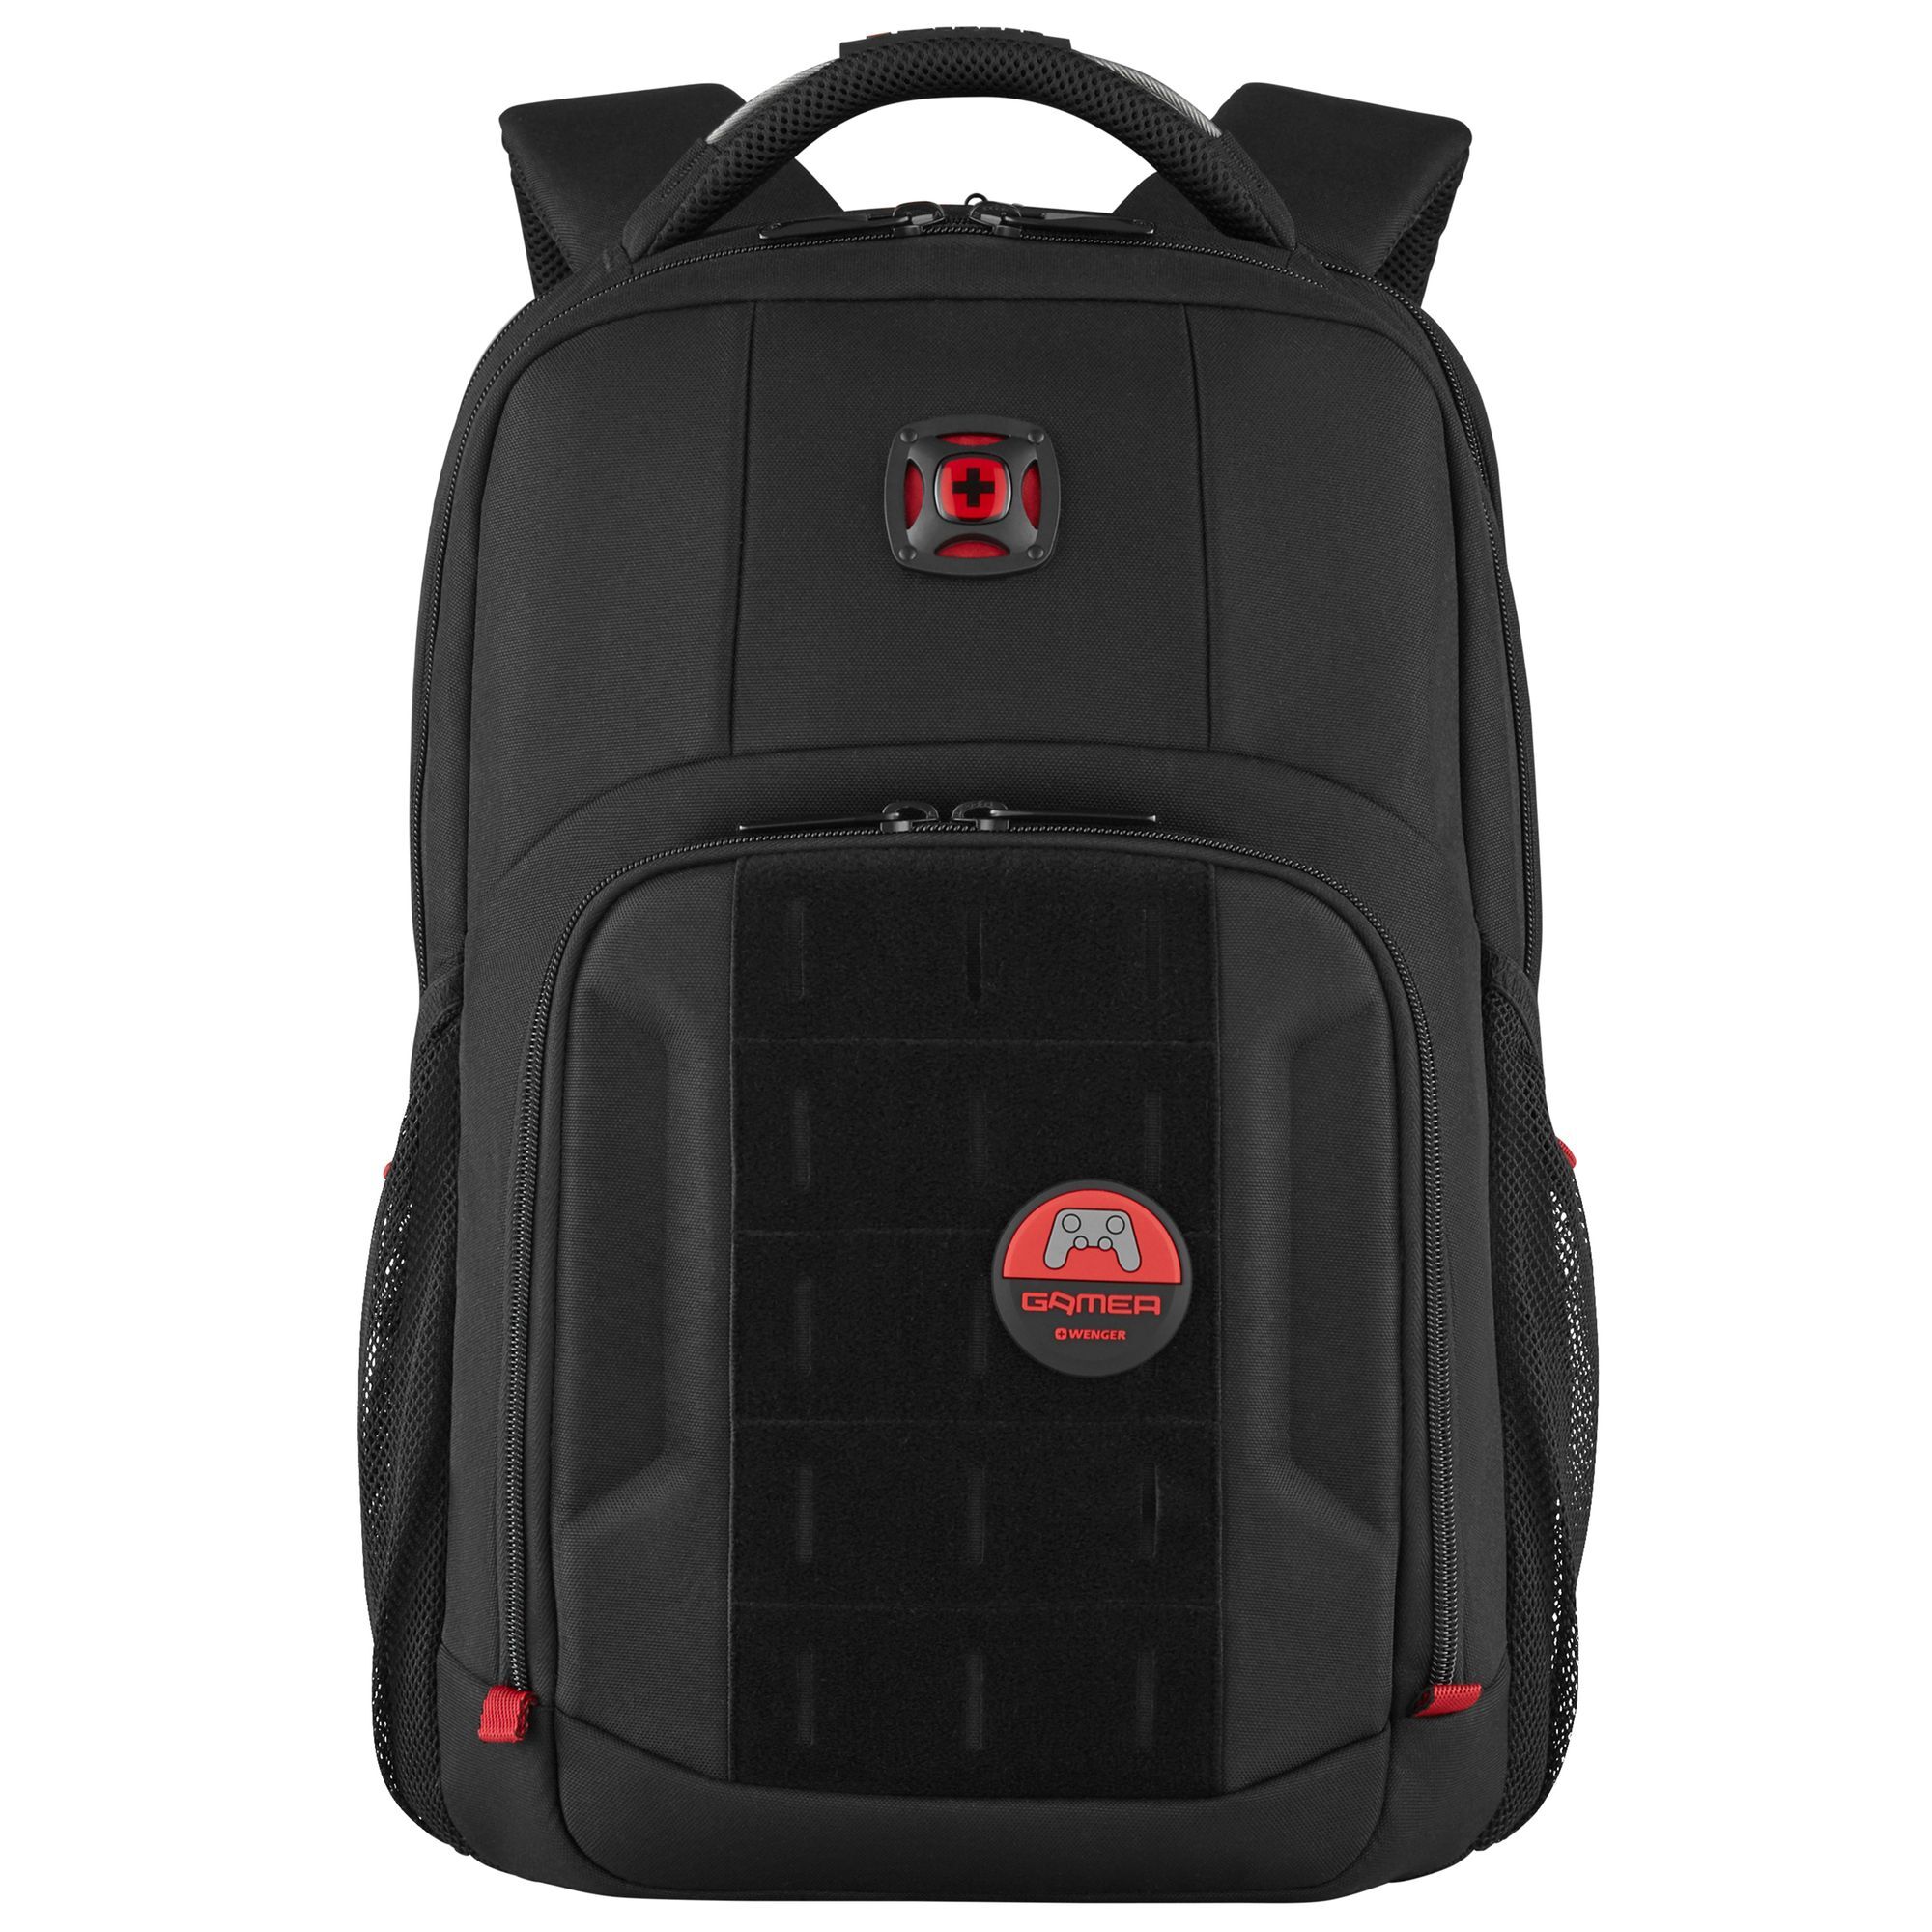 Рюкзак Wenger PlayerMode 46 cm Laptopfach, черный рюкзак wenger trayl 45 cm laptopfach цвет gravity black